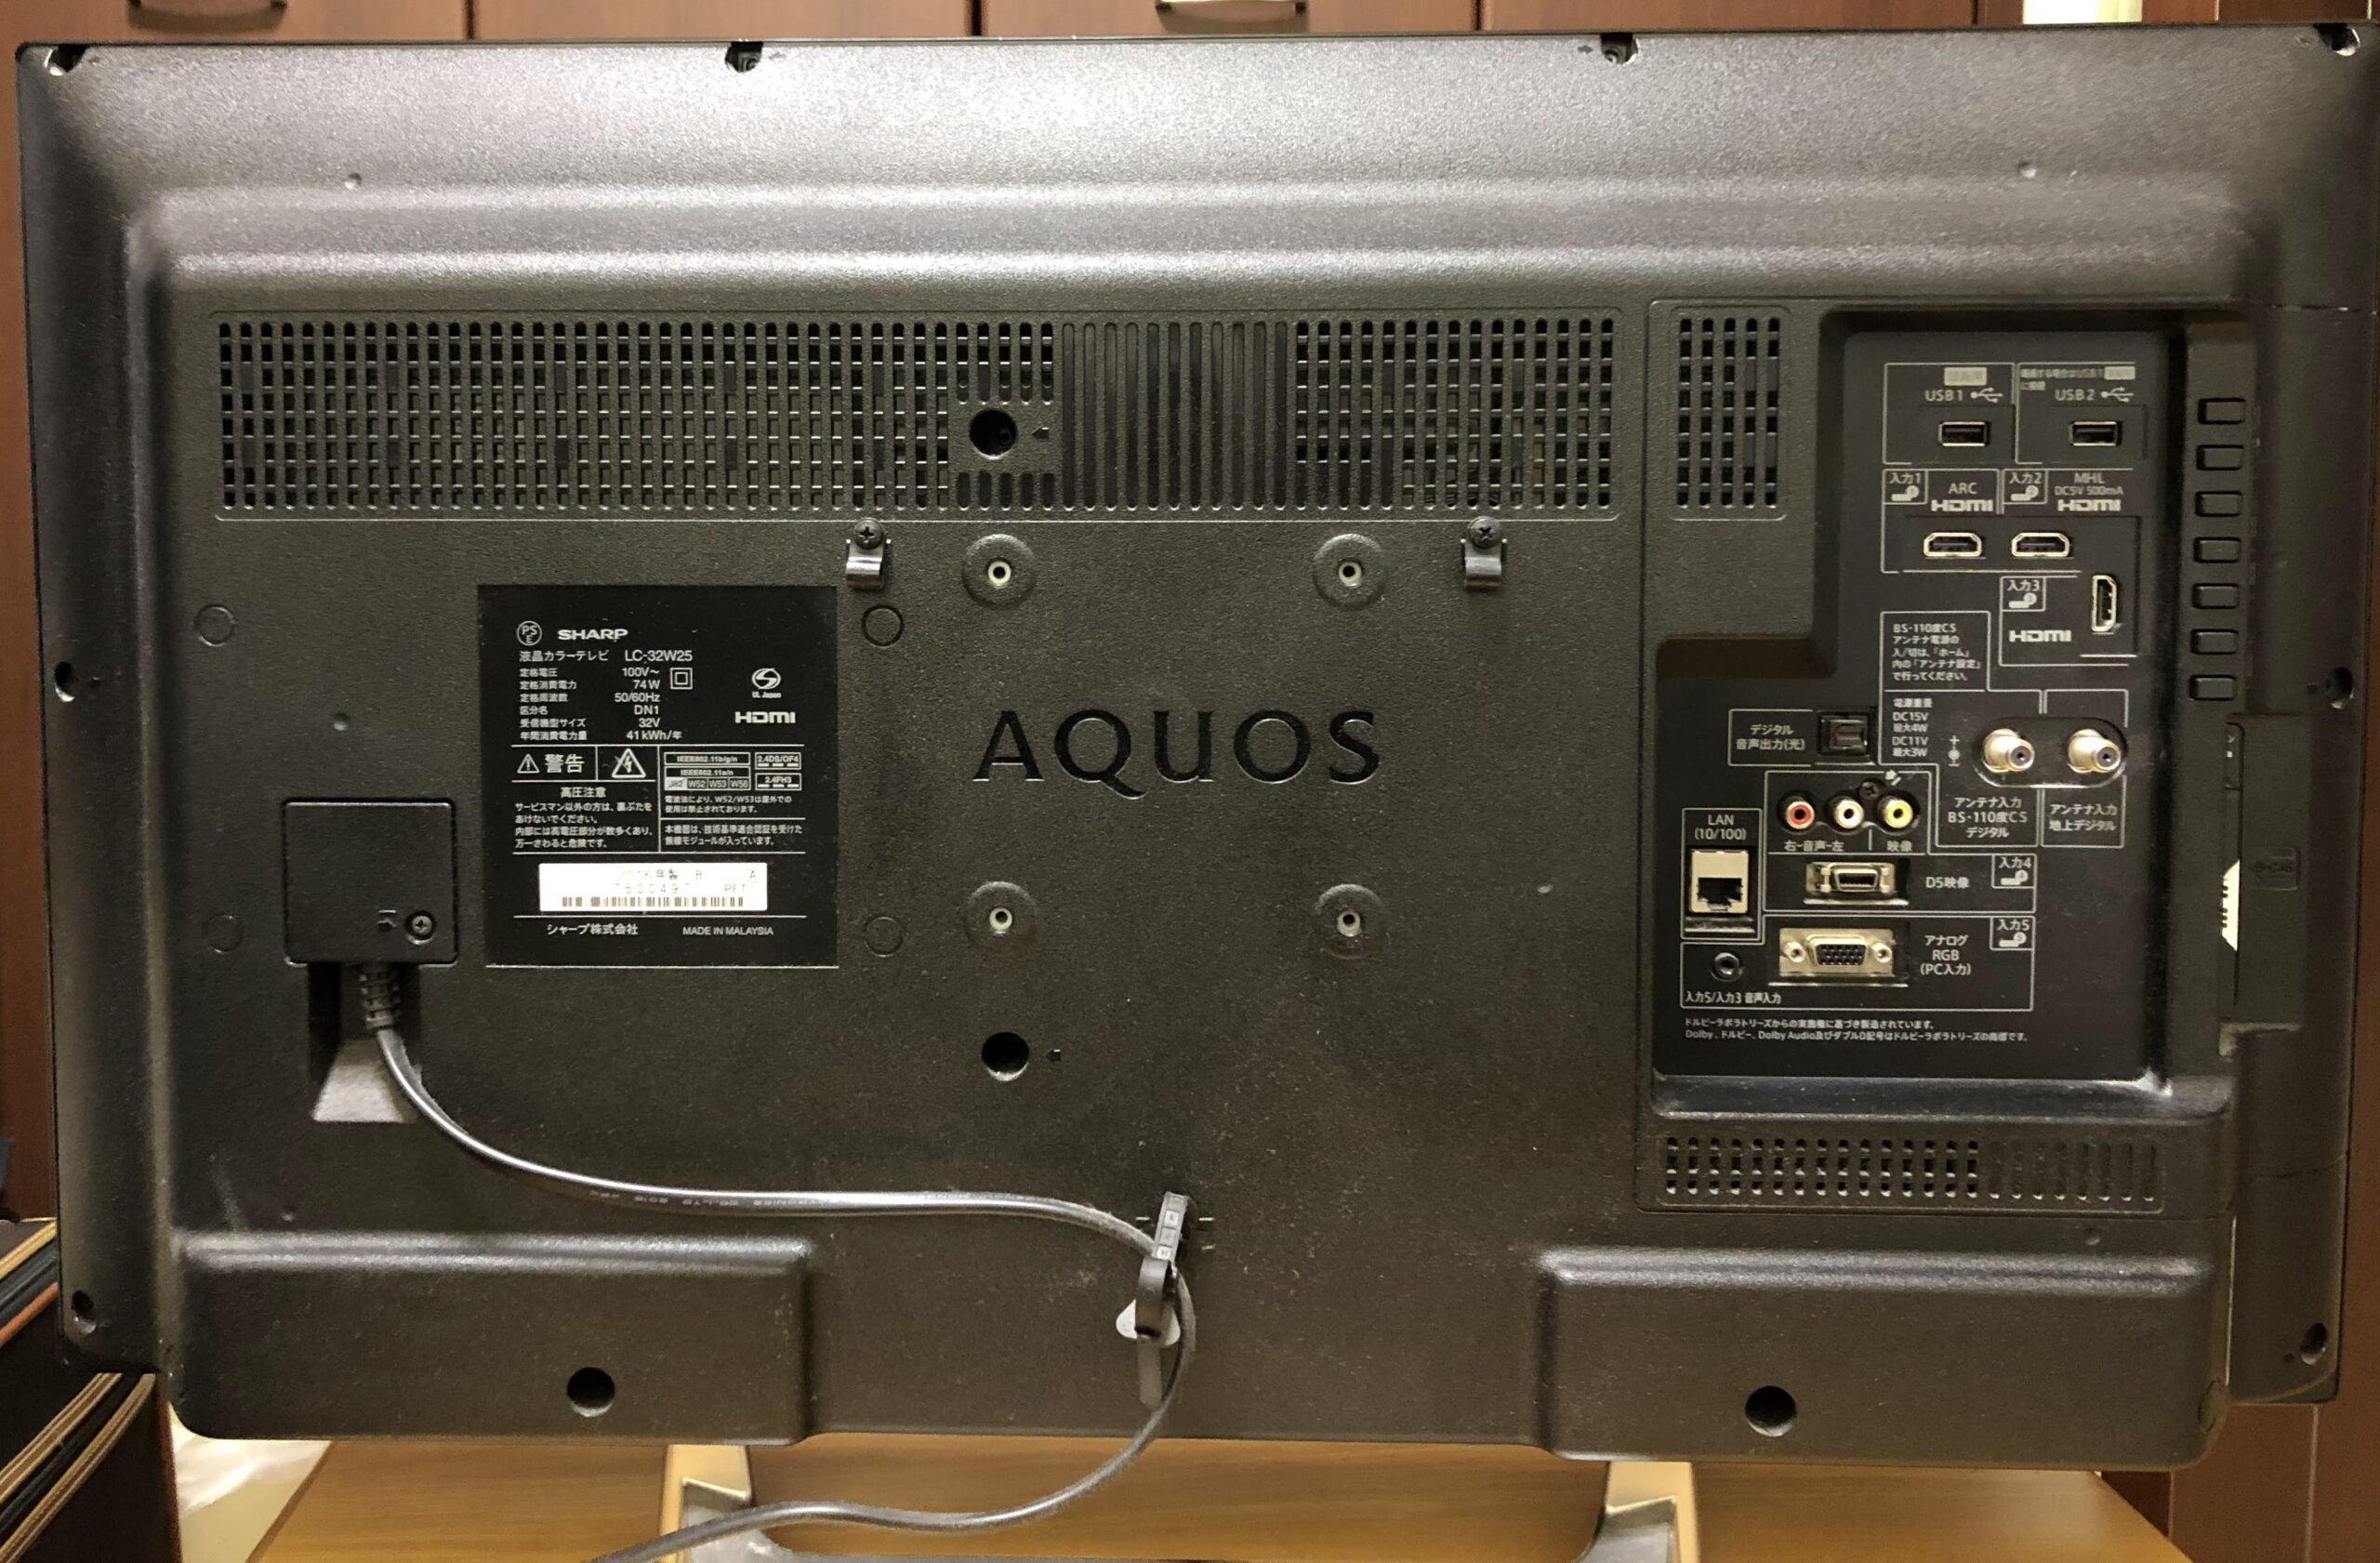 シャープ AQUOS アクオス LC-40LX3 2010年型 分配器 リモコン 説明書 